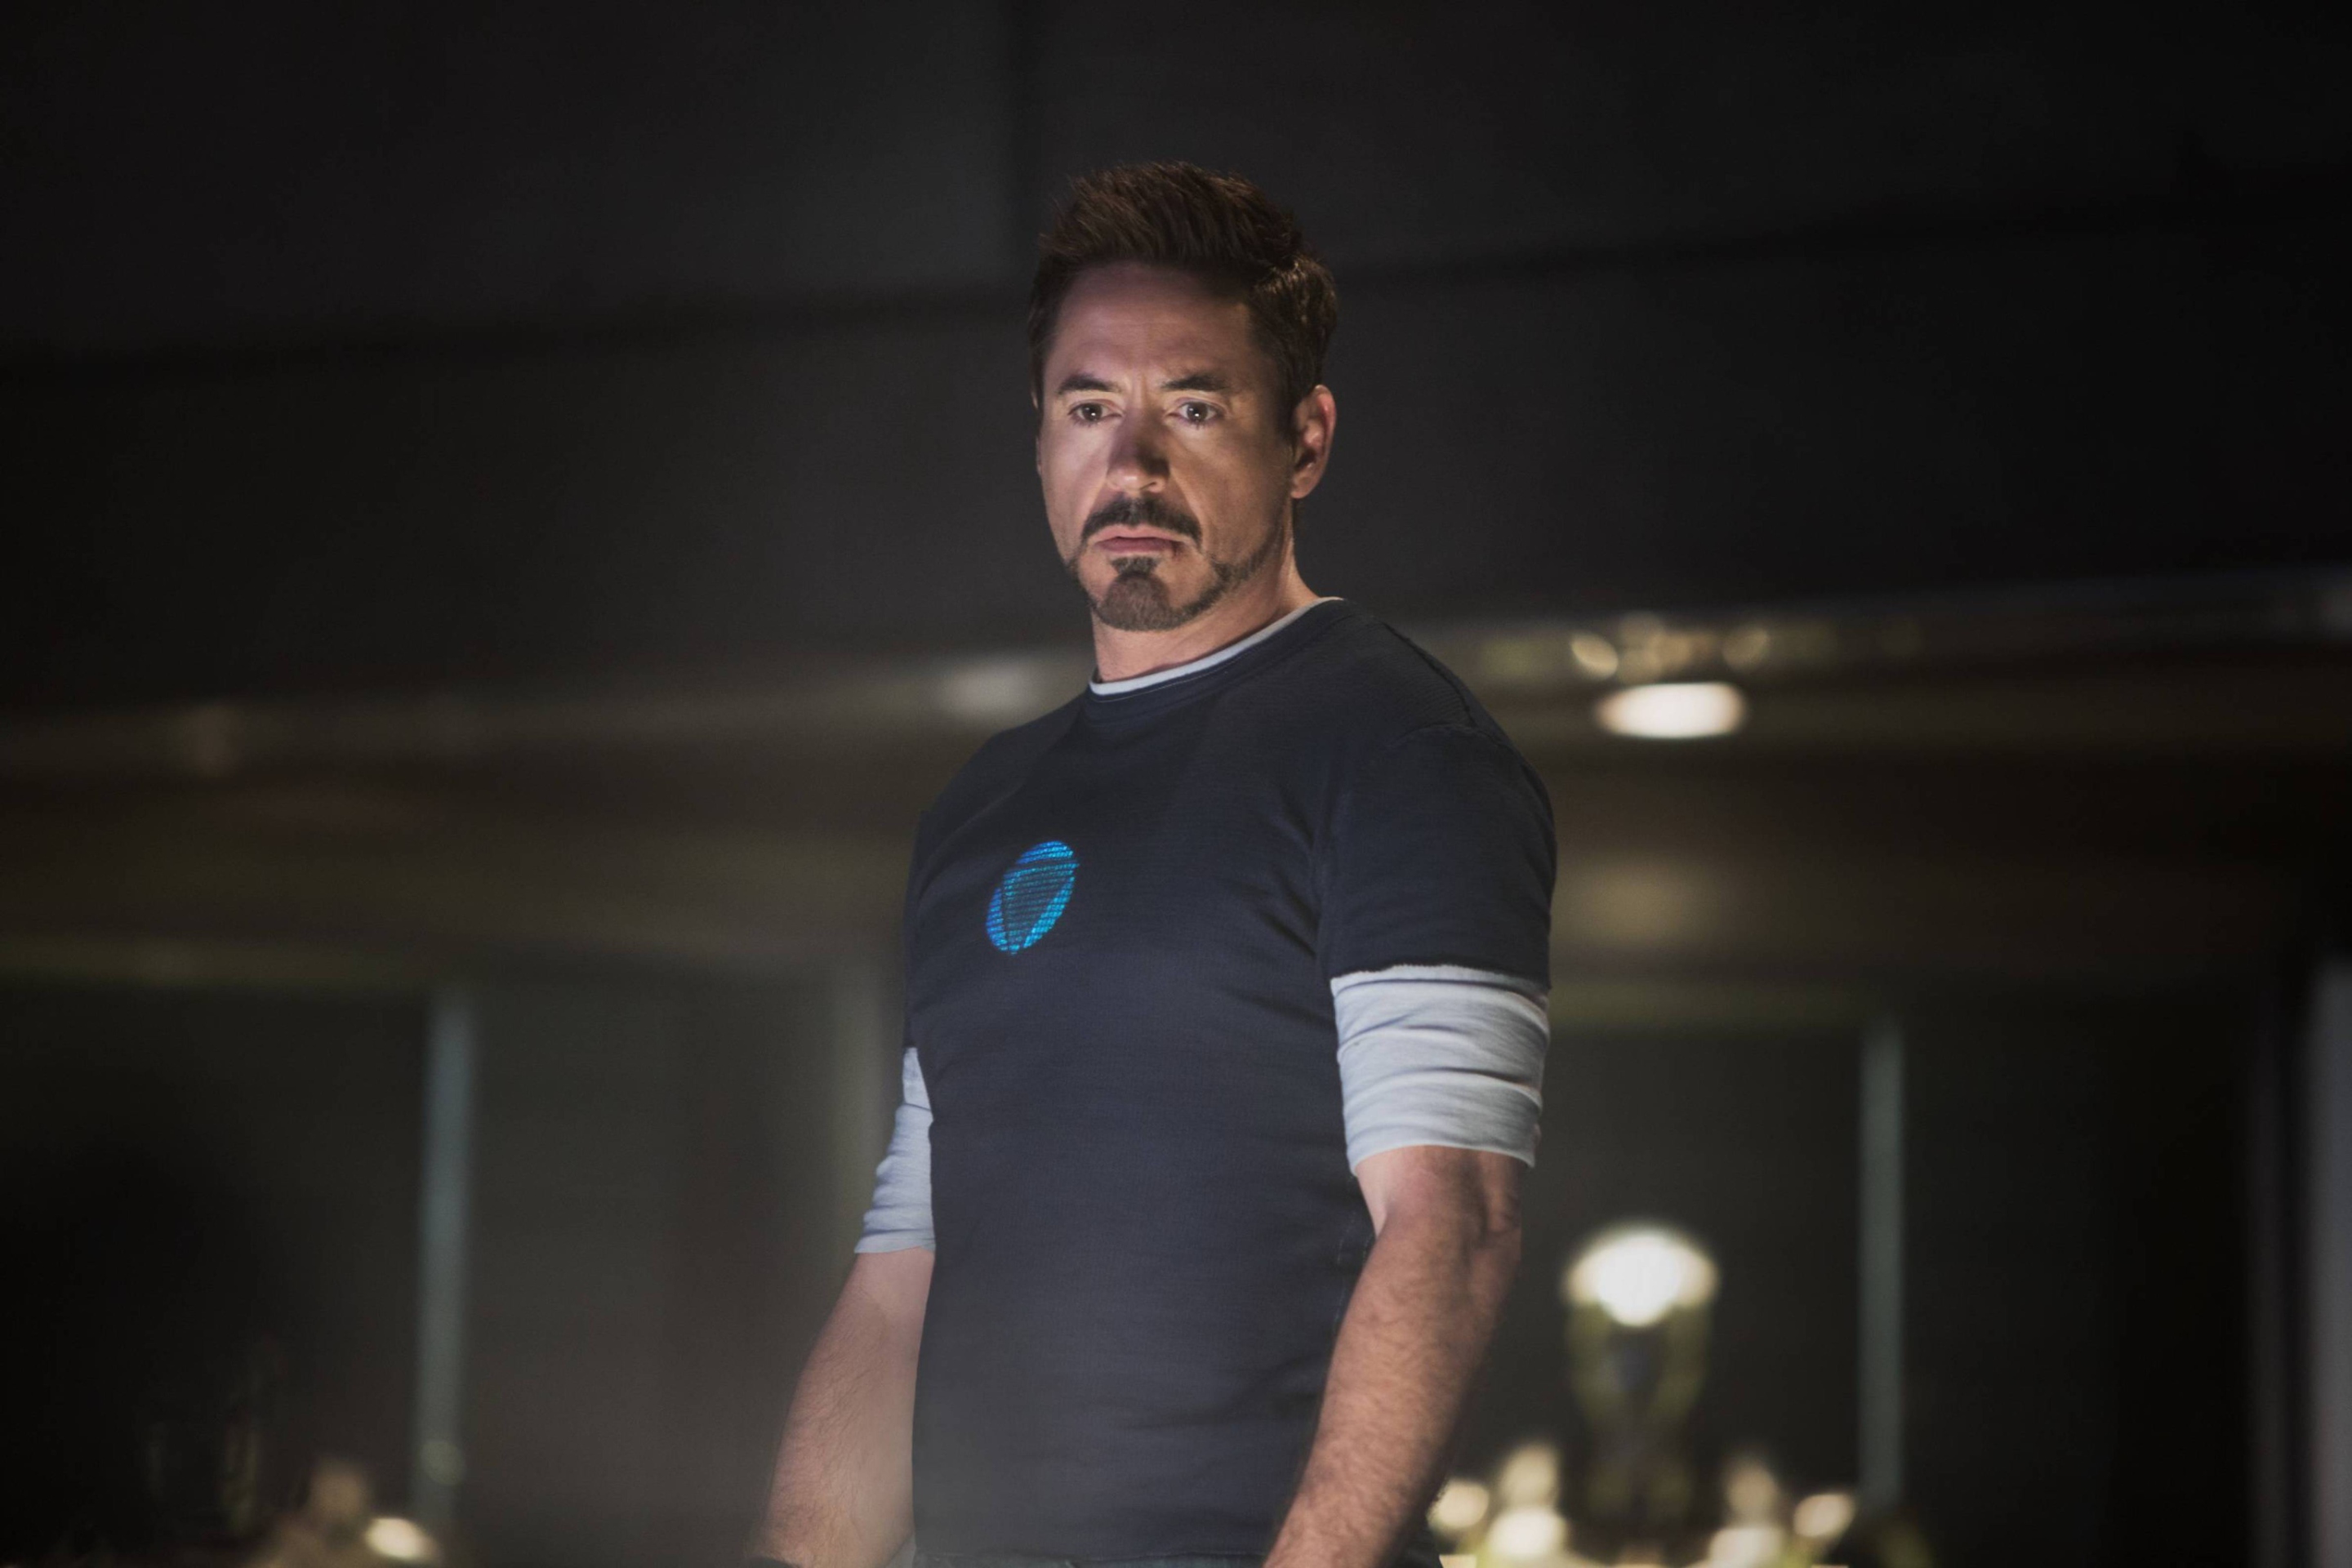 Sfondi Robert Downey Jr As Iron Man 3 2880x1920